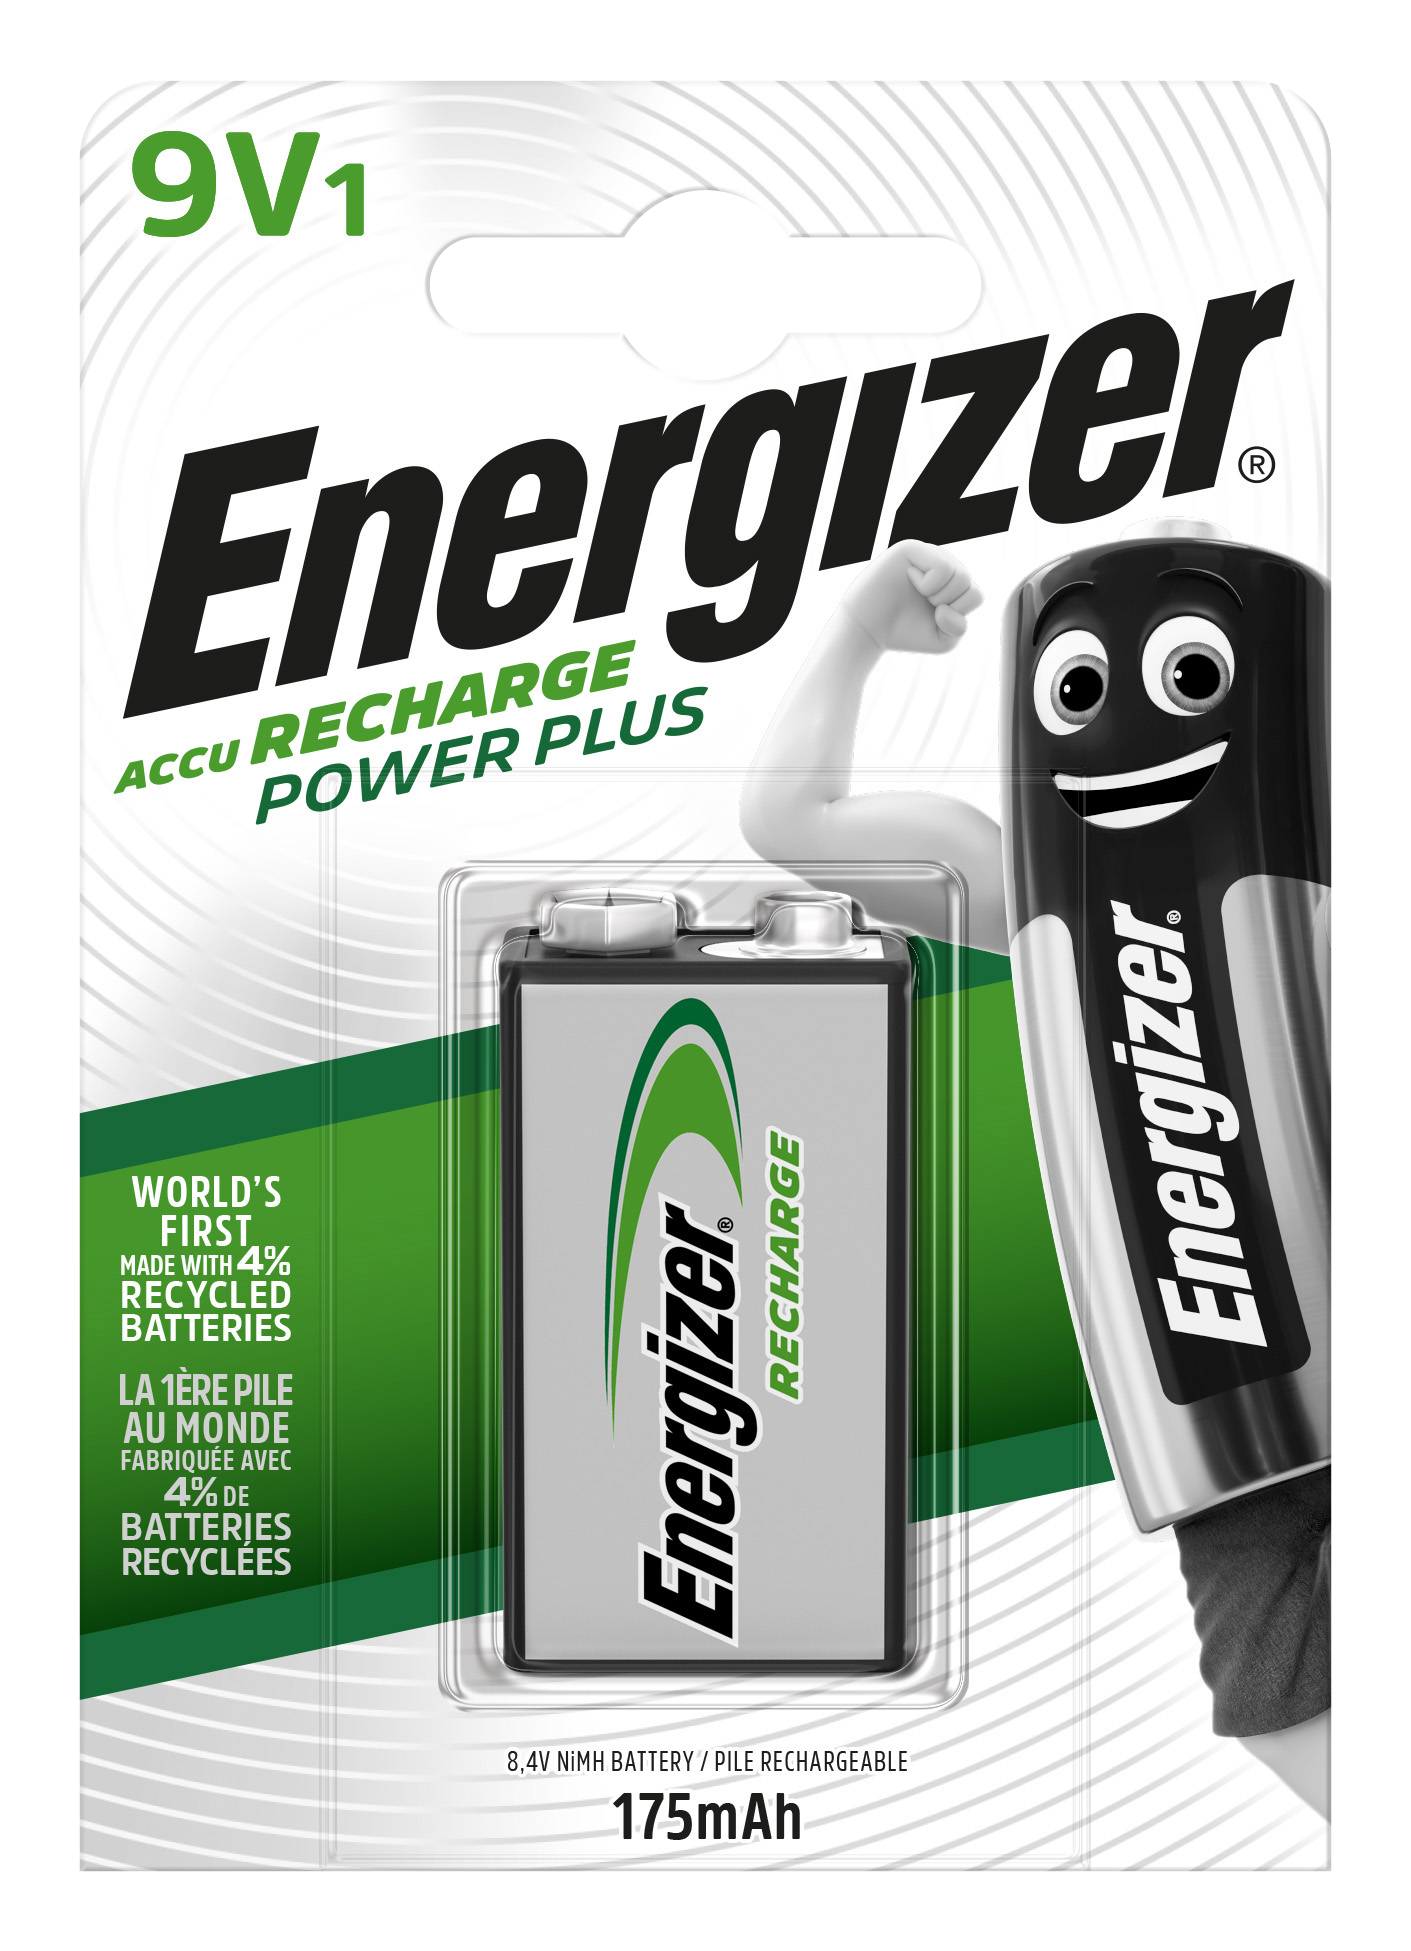 Recycling-Batterieinnovation jetzt auch für wiederaufladbare Energizer Extreme-Batterien